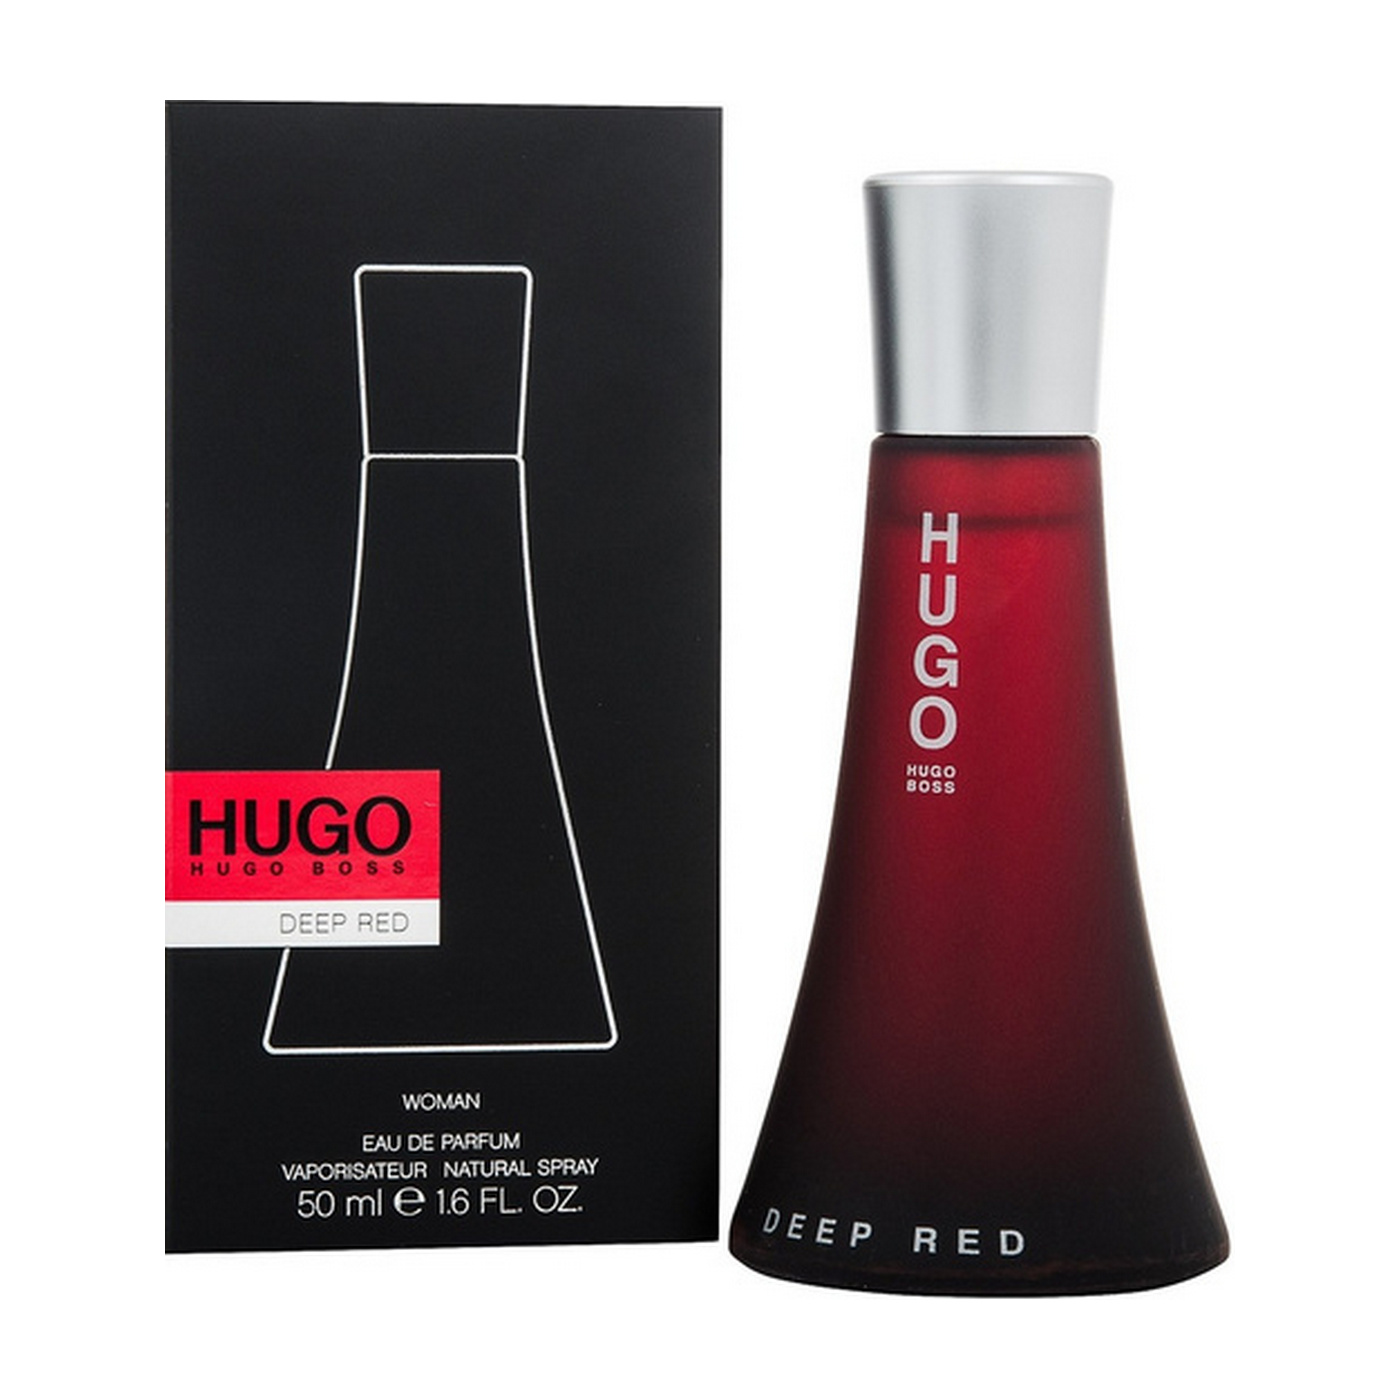 Хуго босс ред. Boss Deep Red Lady 50ml EDP. Deep Red (Hugo Boss) 100мл. Хьюго босс дип ред. Hugo Deep Red парфюмерная вода 50 мл.